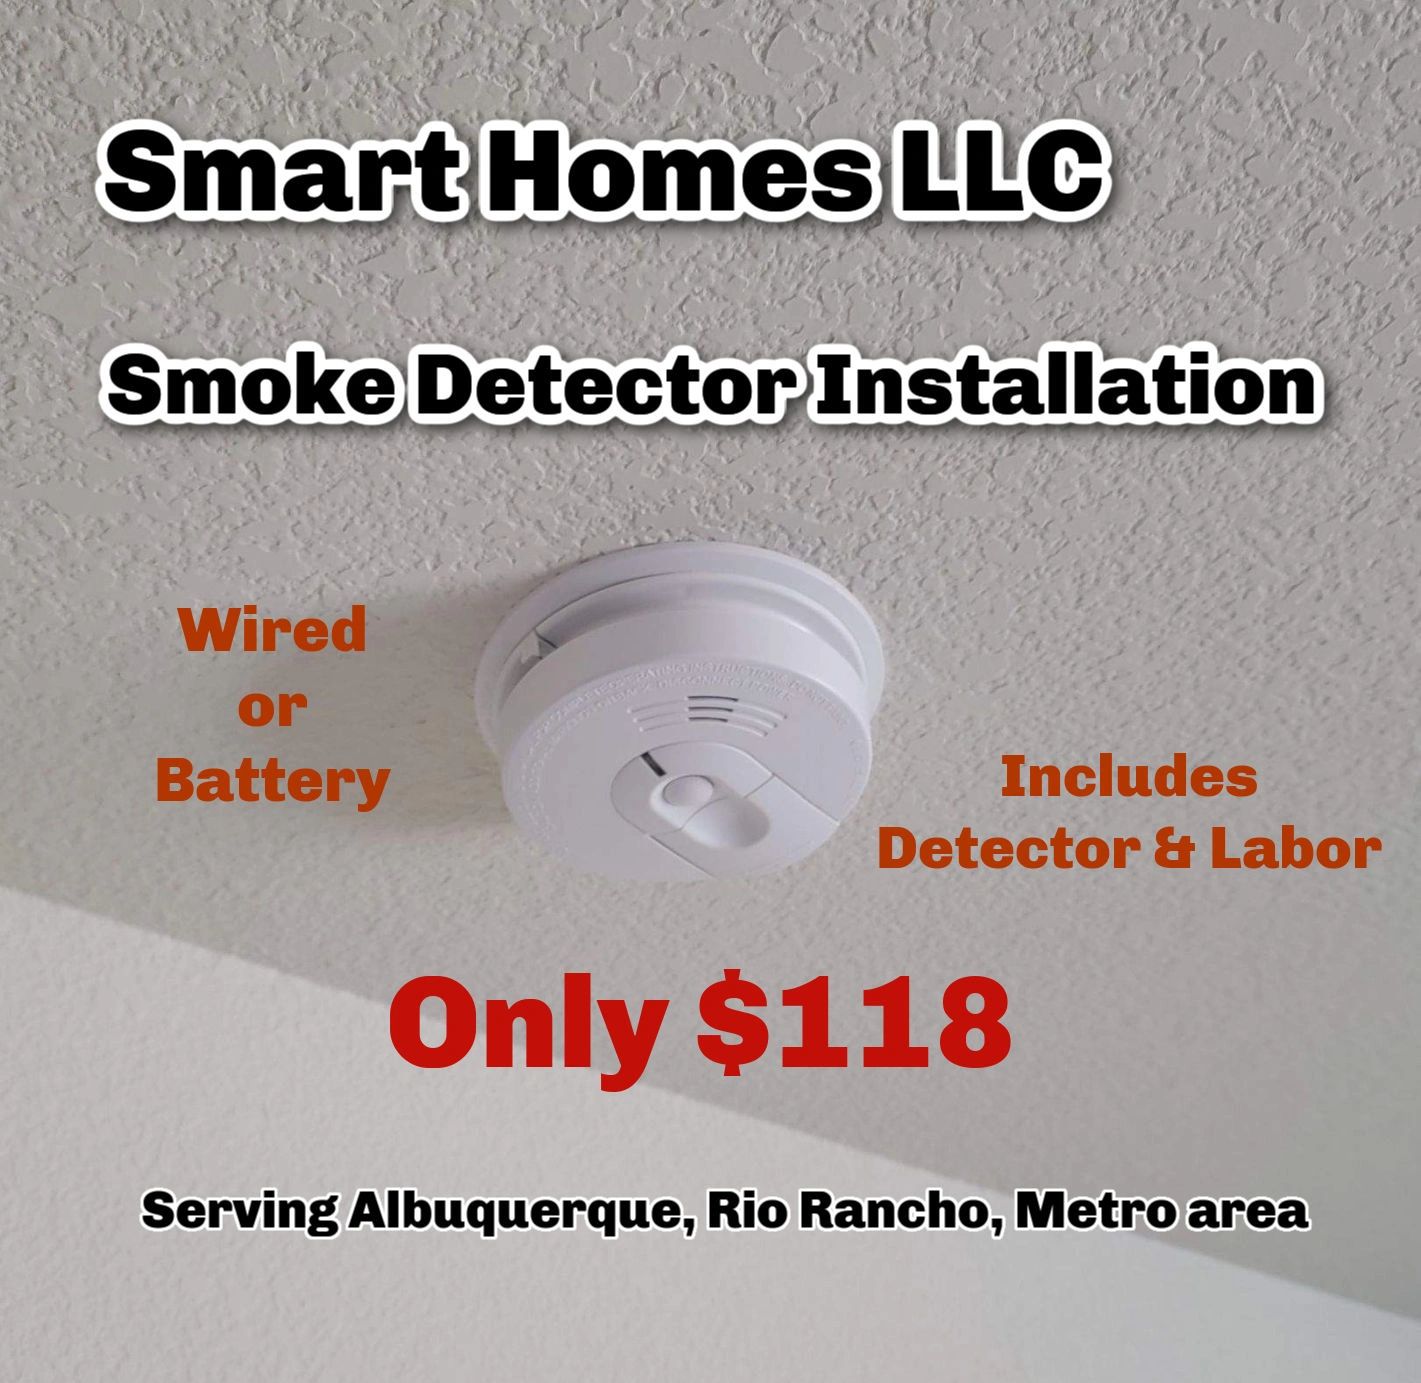 Albuquerque smoke detector installation